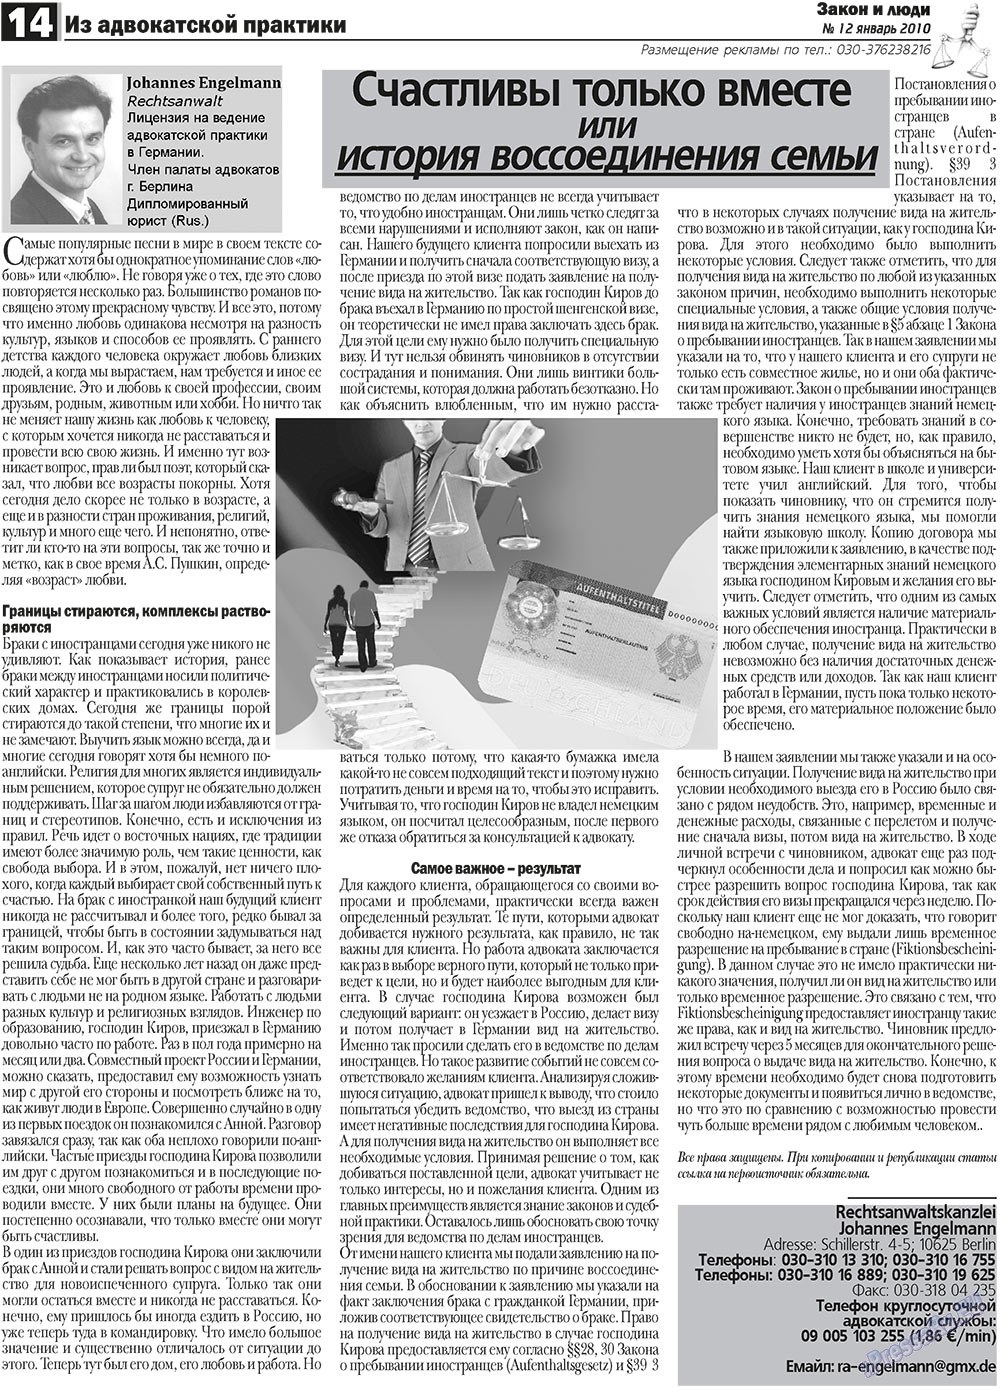 Закон и люди, газета. 2011 №1 стр.14